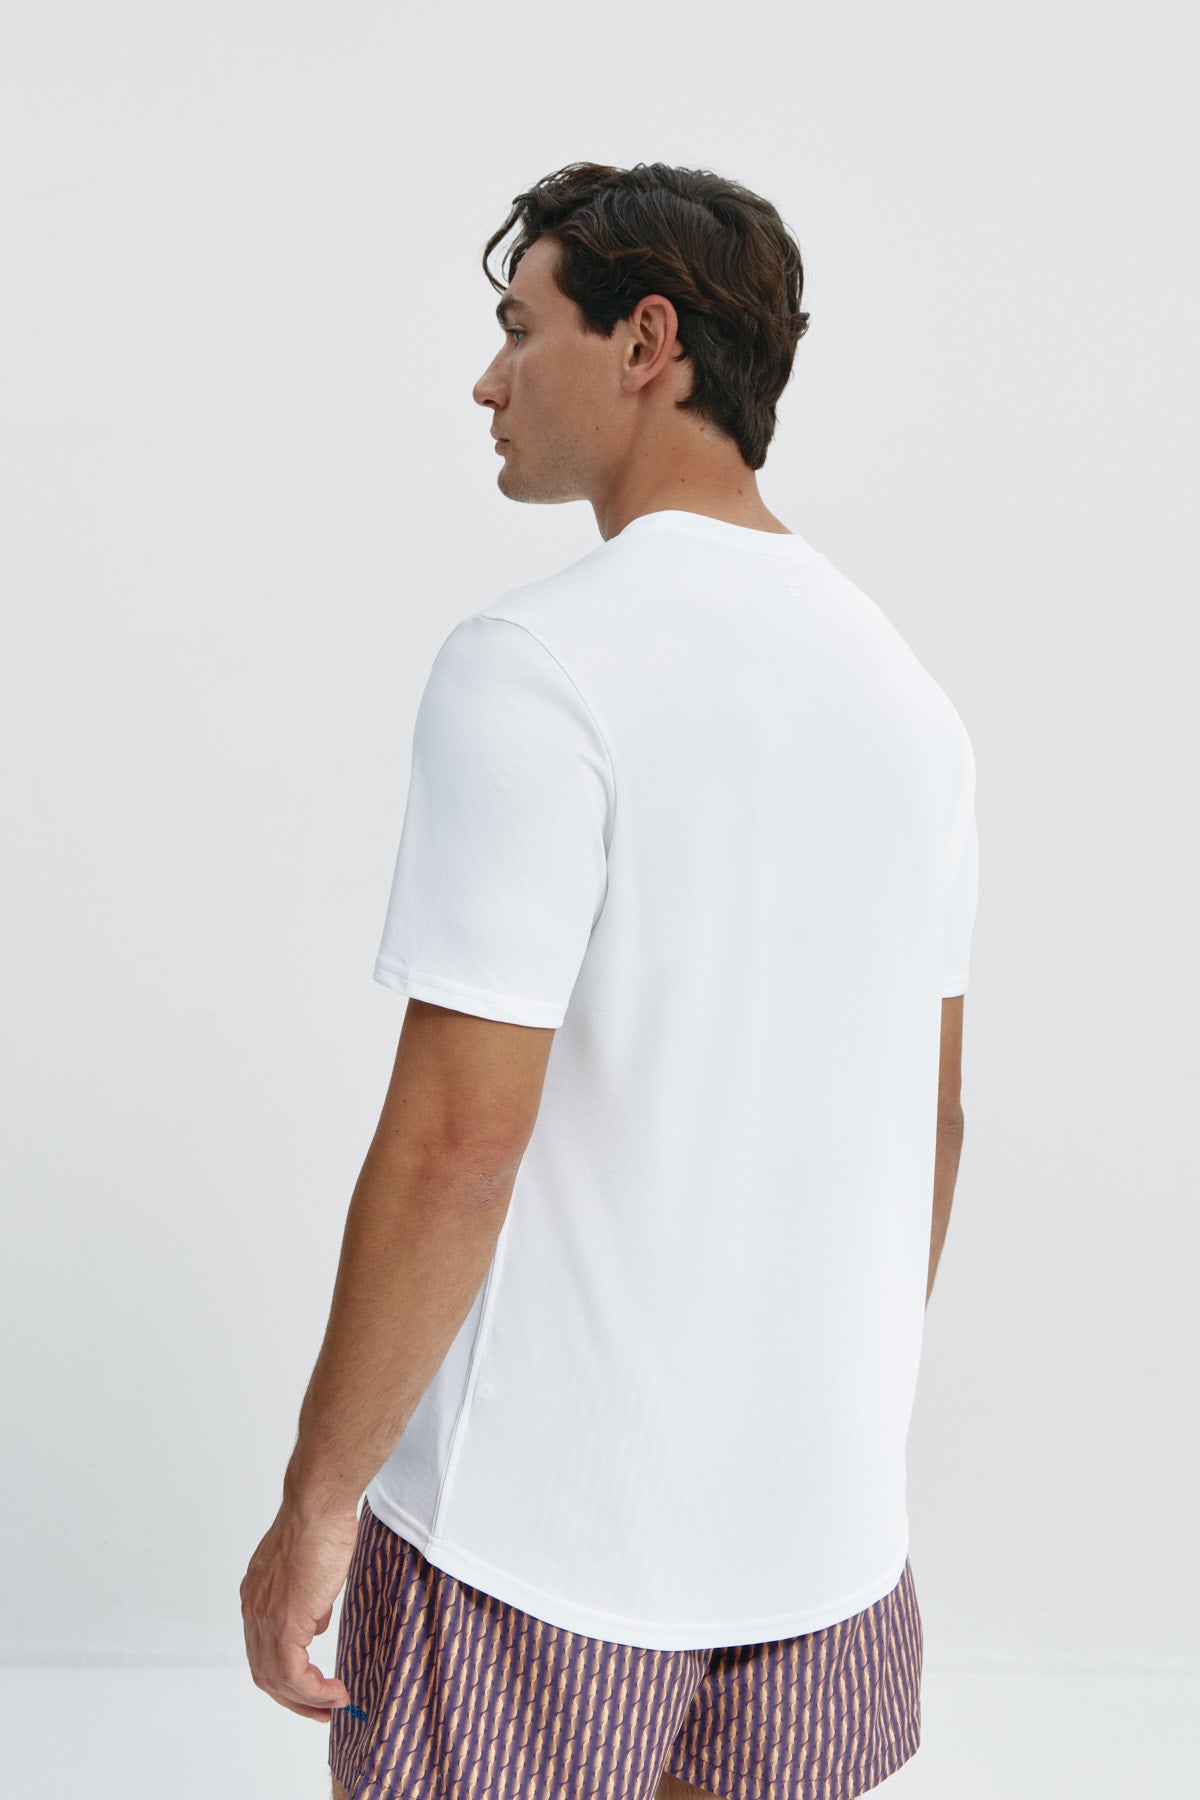 Camiseta básica de hombre blanca con logo estampado de espiral de manga corta, antiarrugas y antimanchas. Foto espalda